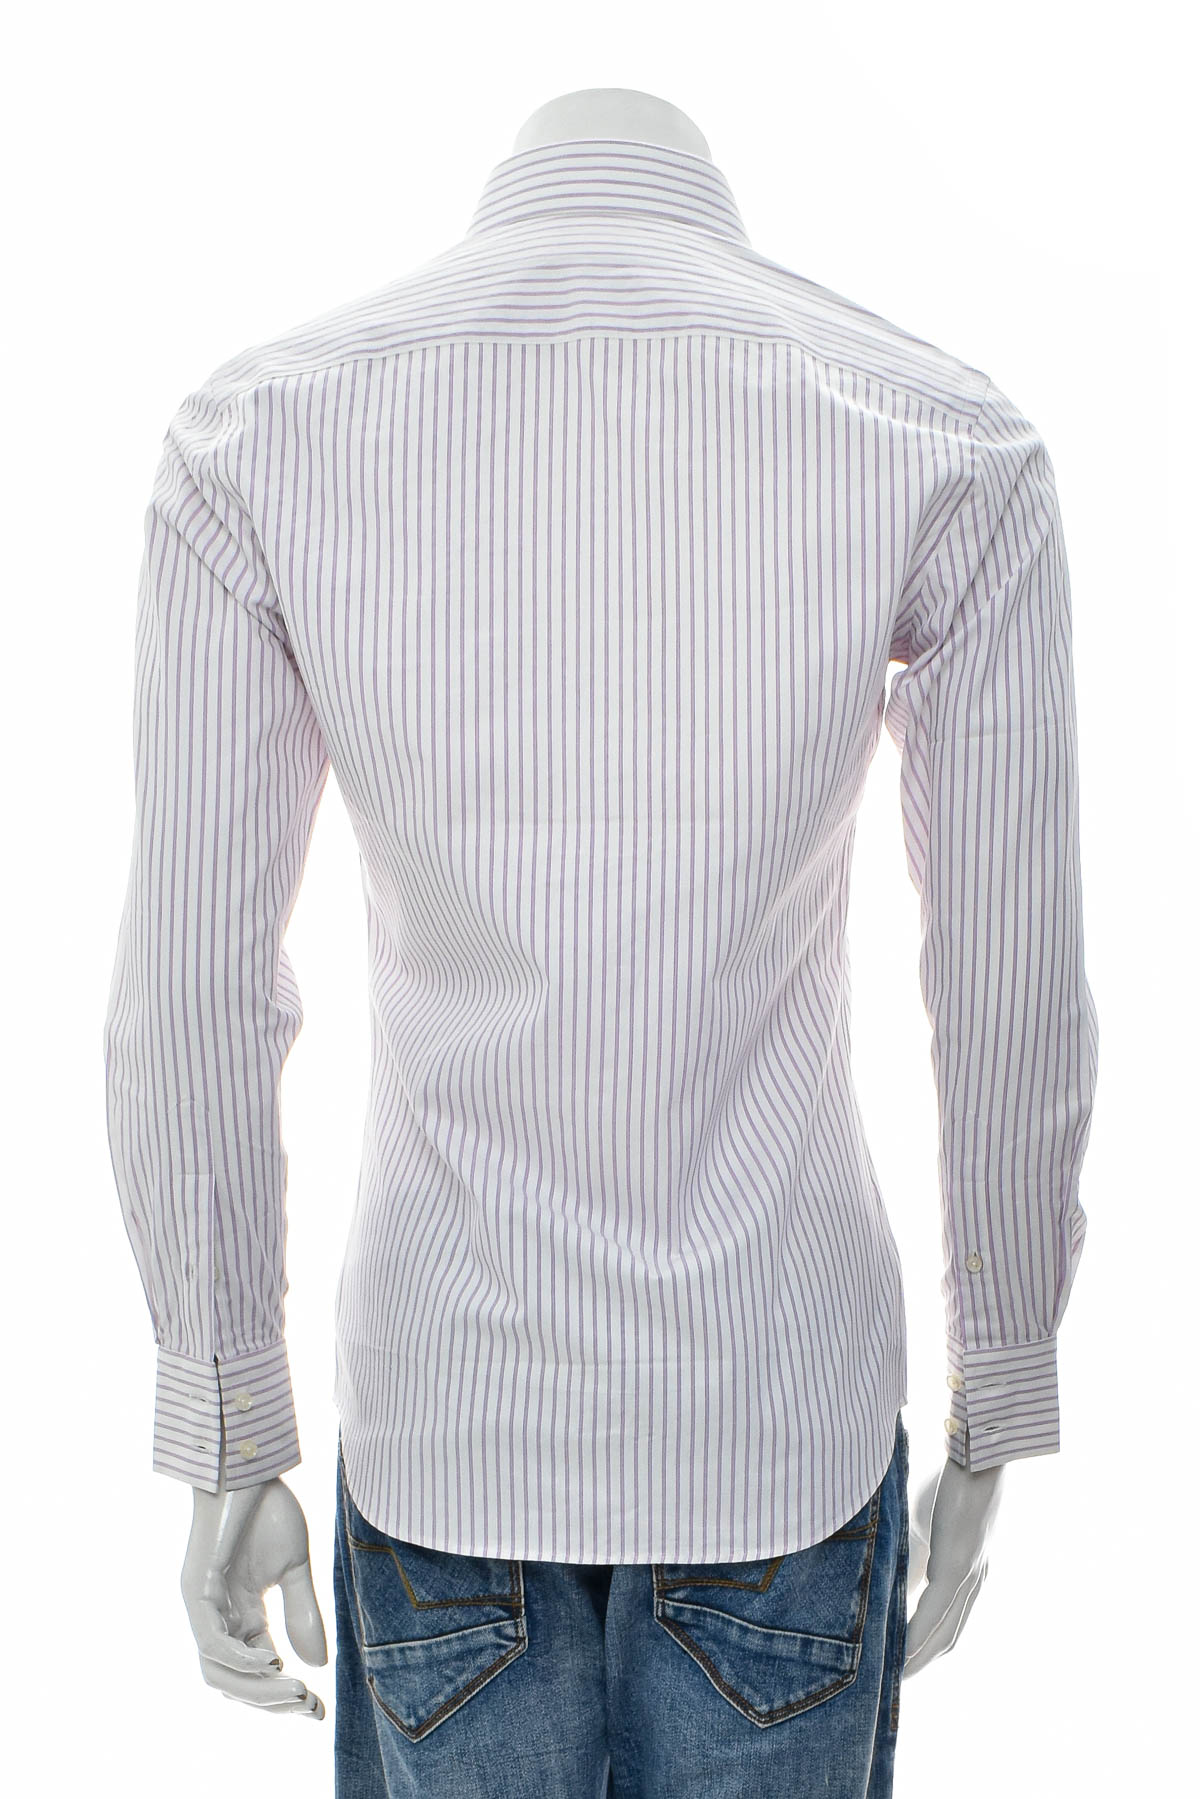 Ανδρικό πουκάμισο - ATBoutique - 1